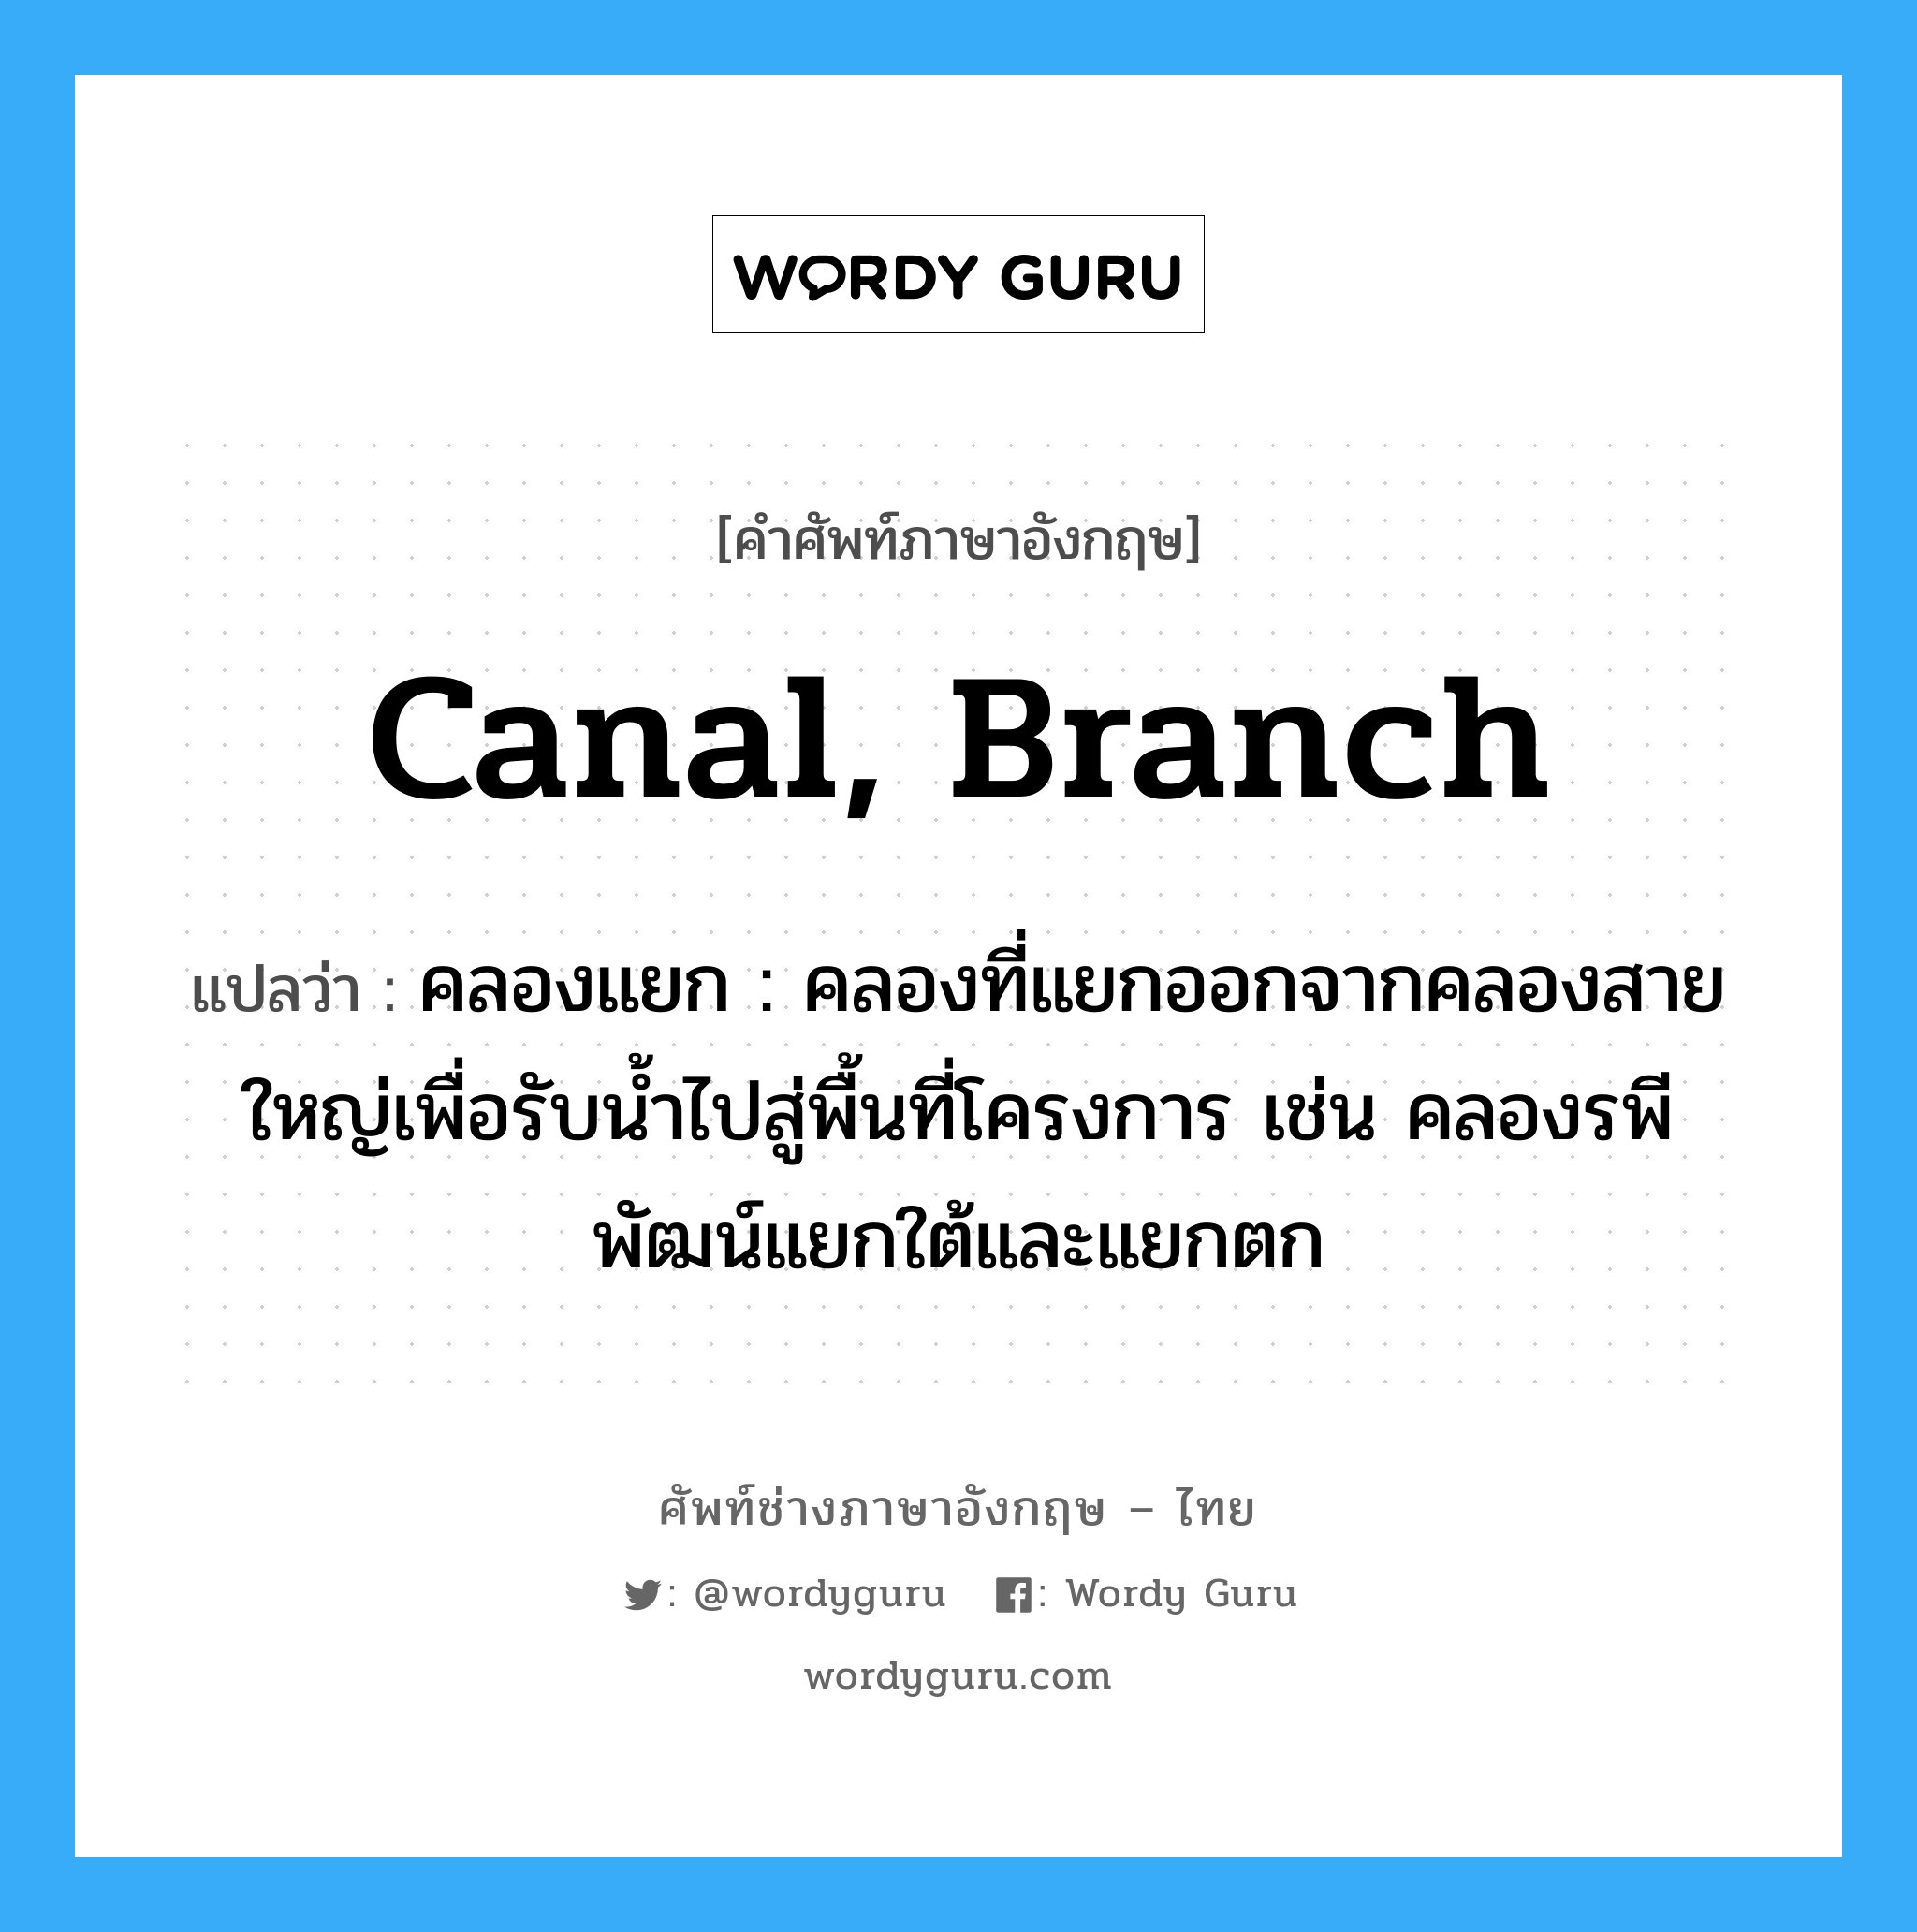 canal, branch แปลว่า?, คำศัพท์ช่างภาษาอังกฤษ - ไทย canal, branch คำศัพท์ภาษาอังกฤษ canal, branch แปลว่า คลองแยก : คลองที่แยกออกจากคลองสายใหญ่เพื่อรับน้ำไปสู่พื้นที่โครงการ เช่น คลองรพีพัฒน์แยกใต้และแยกตก